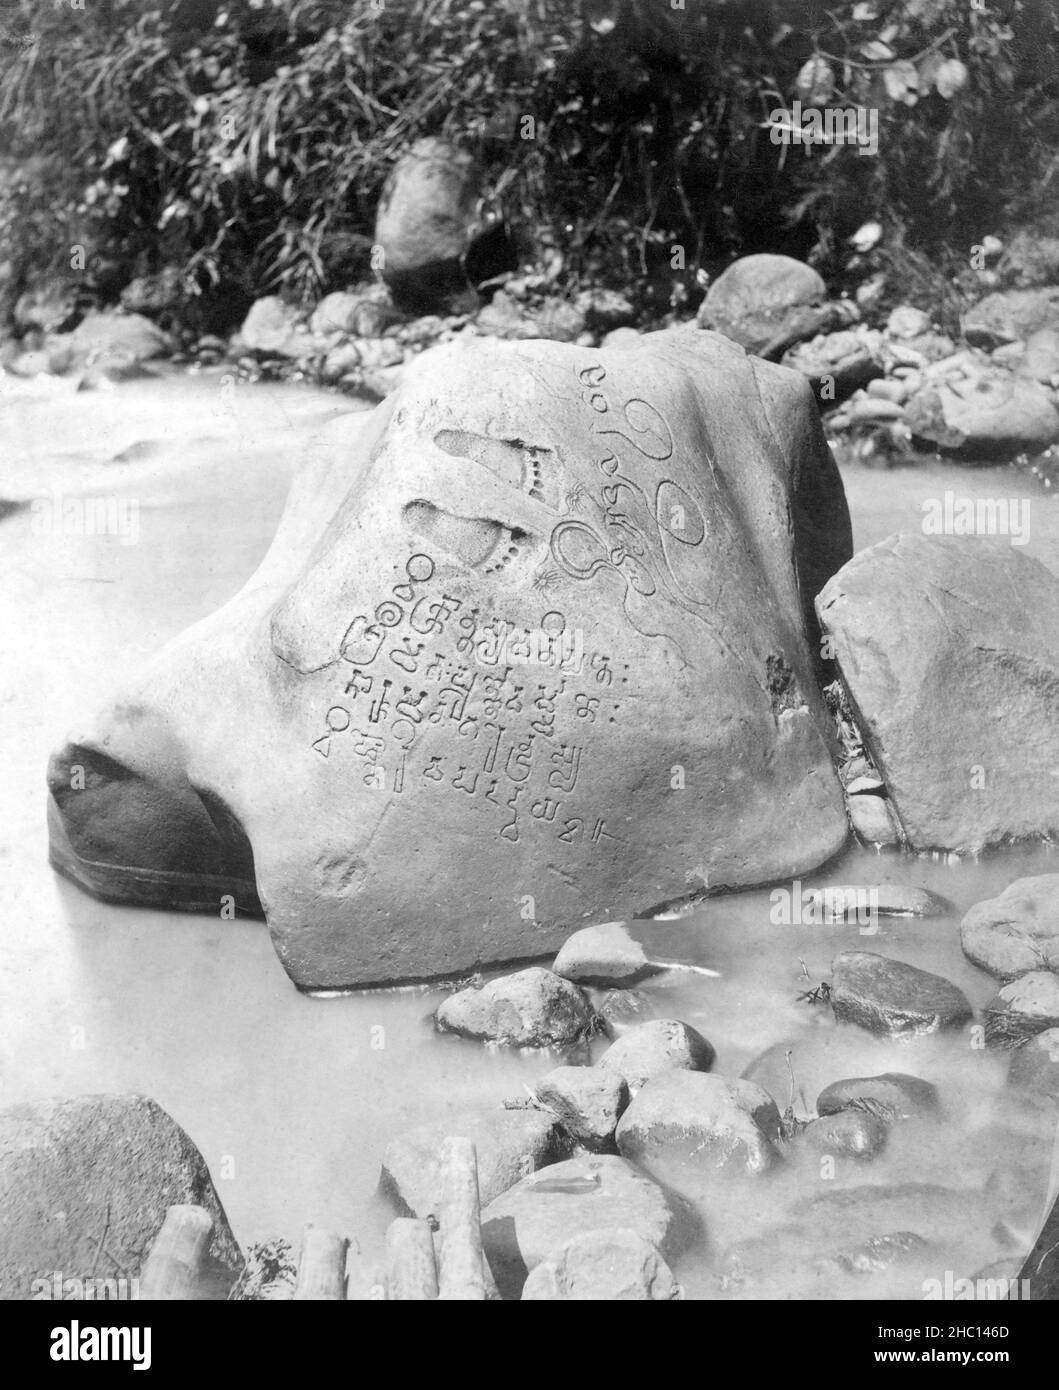 Indonesien: Der 5th. Jahrhundert Ciaruteun Inschrift Stein, Ciaruteun Fluss, Cibungbulang Bezirk, Bogor Regency, West Java. Foto von Isidore van Kinsbergen (1821 - 1905), Ende 19th. Jahrhundert. Die Ciaruteun-Inschrift, auch Ciarutön oder auch Ciampea-Inschrift genannt, ist eine Steininschrift aus dem 5th. Jahrhundert, die am Flussbett des Ciaruteun-Flusses, einem Nebenfluss des Cisadane-Flusses, unweit von Bogor, West-Java, Indonesien, entdeckt wurde. Die Inschrift stammt aus der Zeit des Tarumanagara-Königreichs, eines der frühesten Hindu-Königreiche in der indonesischen Geschichte. Stockfoto